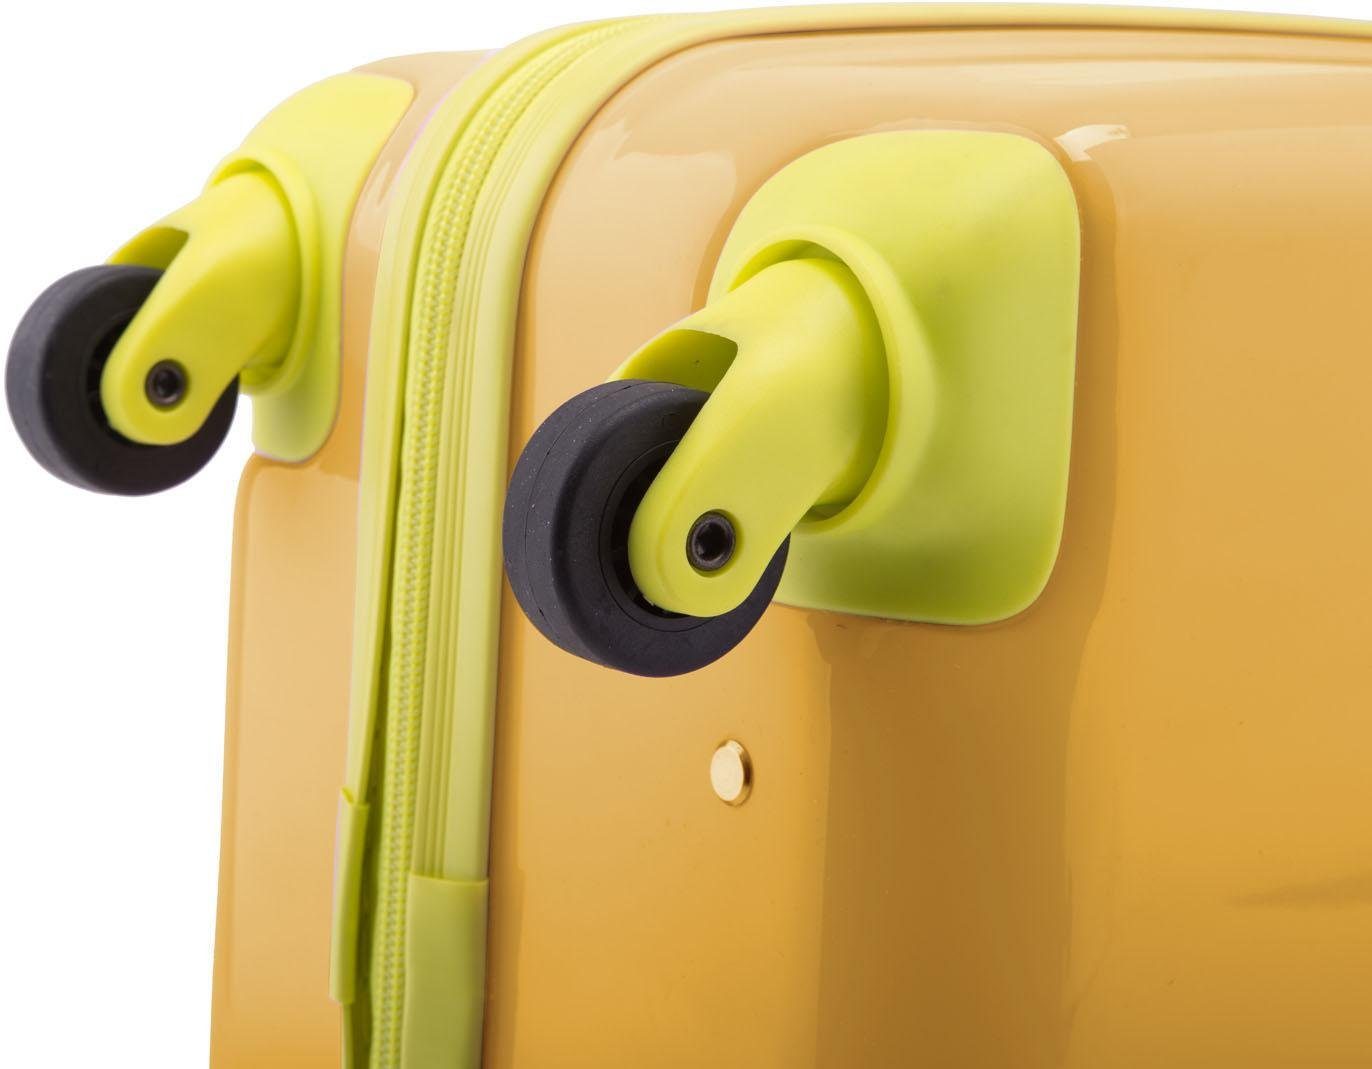 Hauptstadtkoffer Kinderkoffer For Kids, 4 gelb Rollen